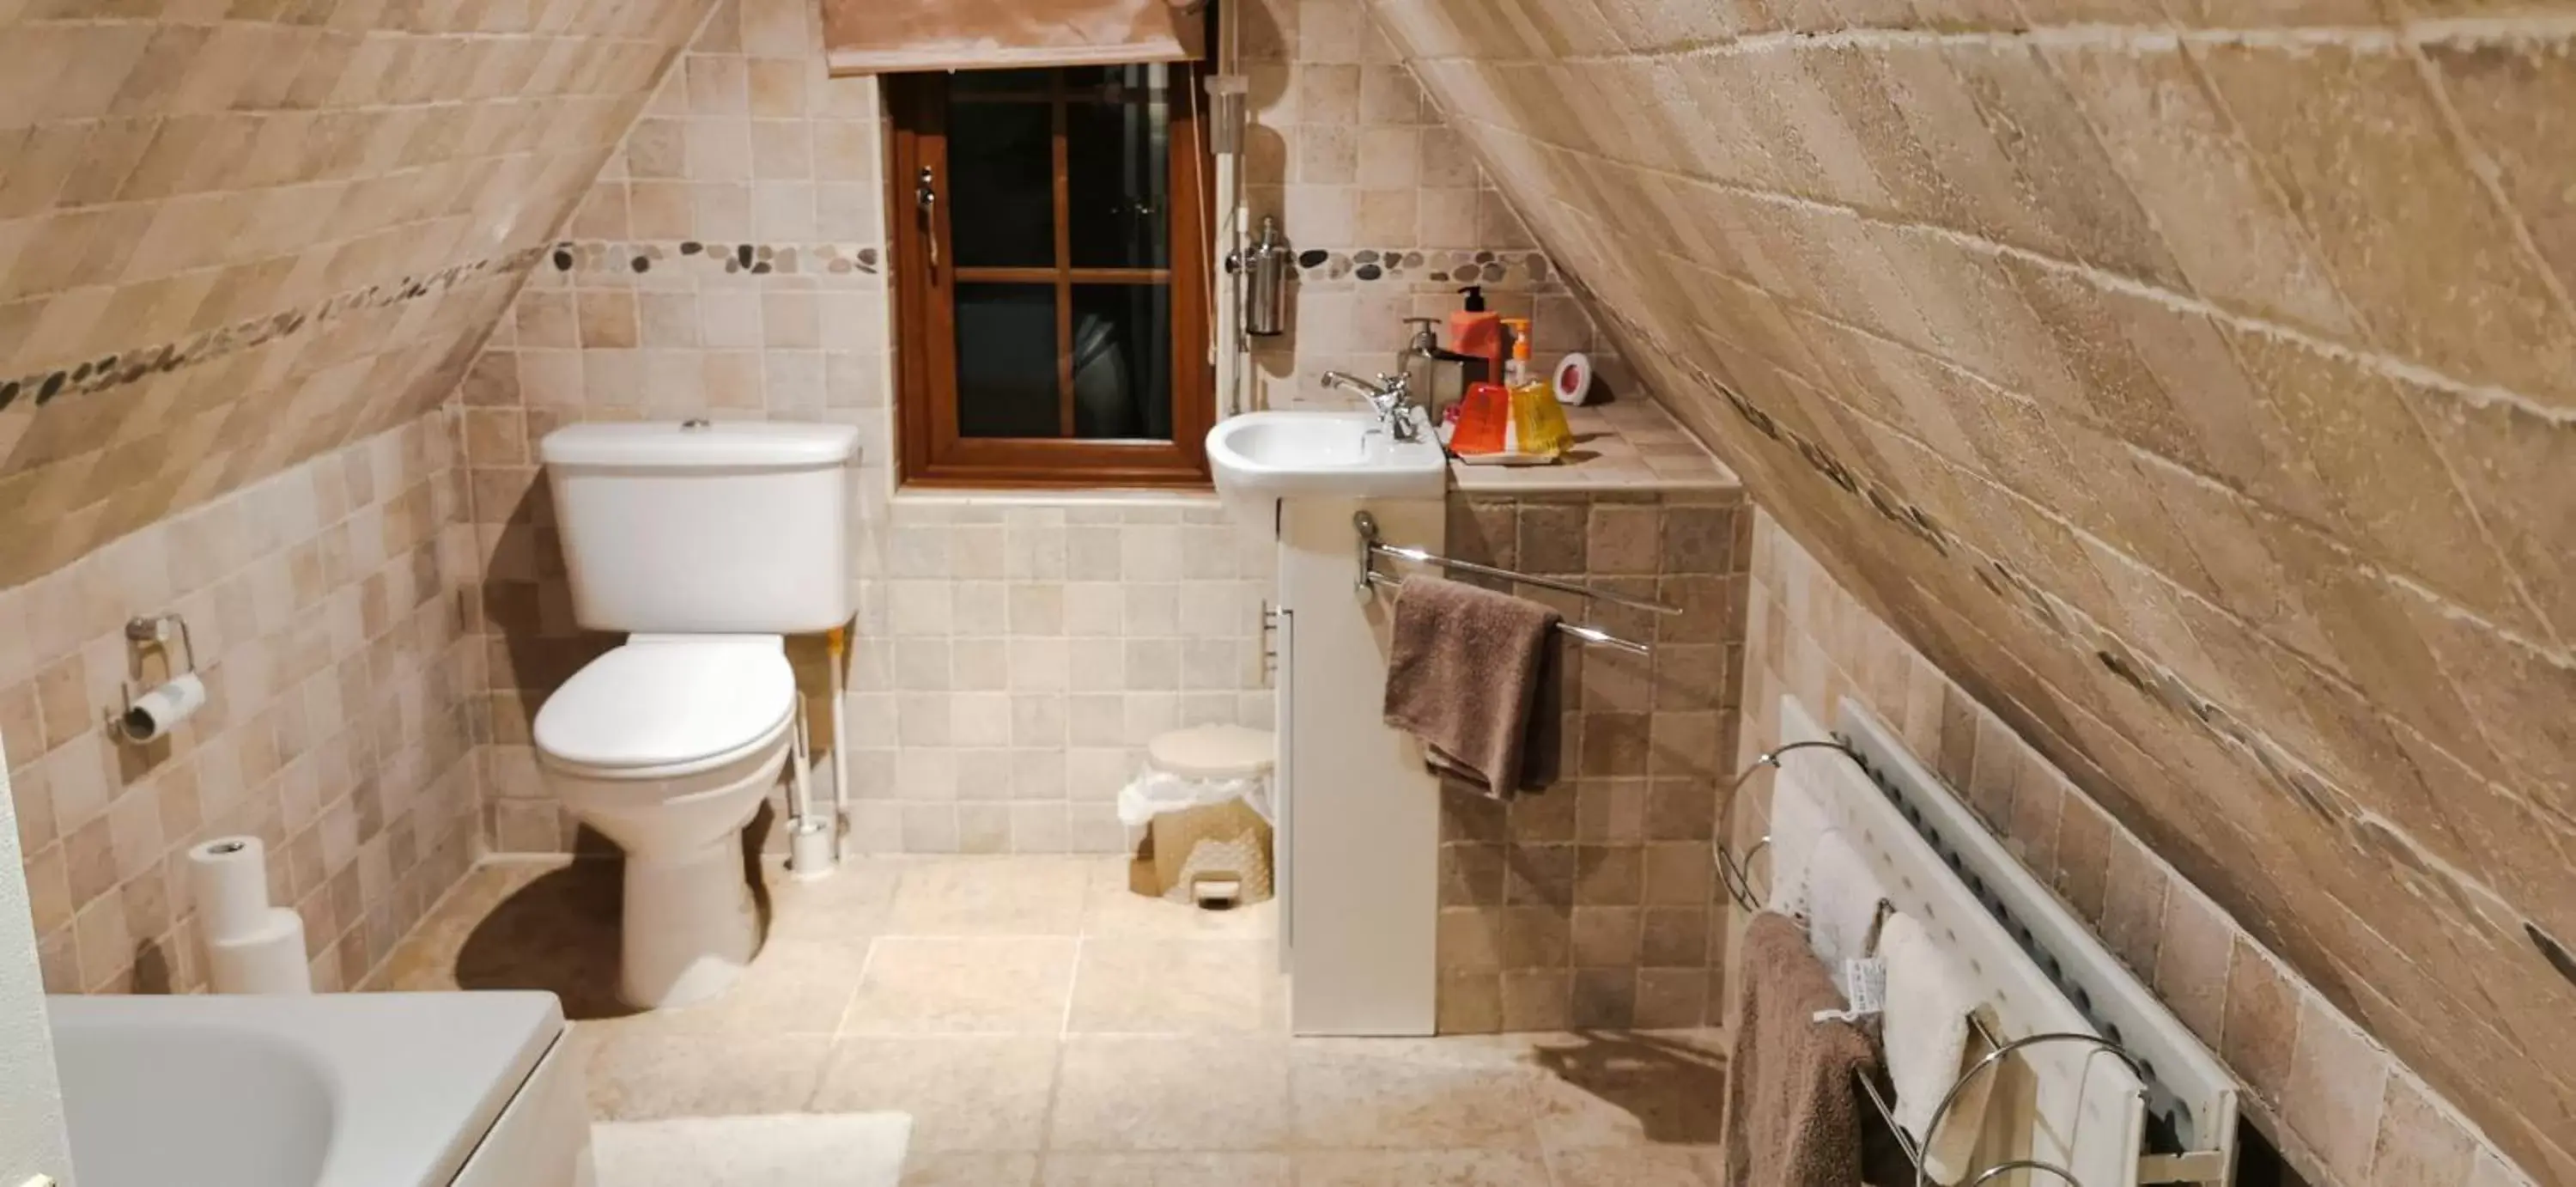 Bathroom in Drumhirk House